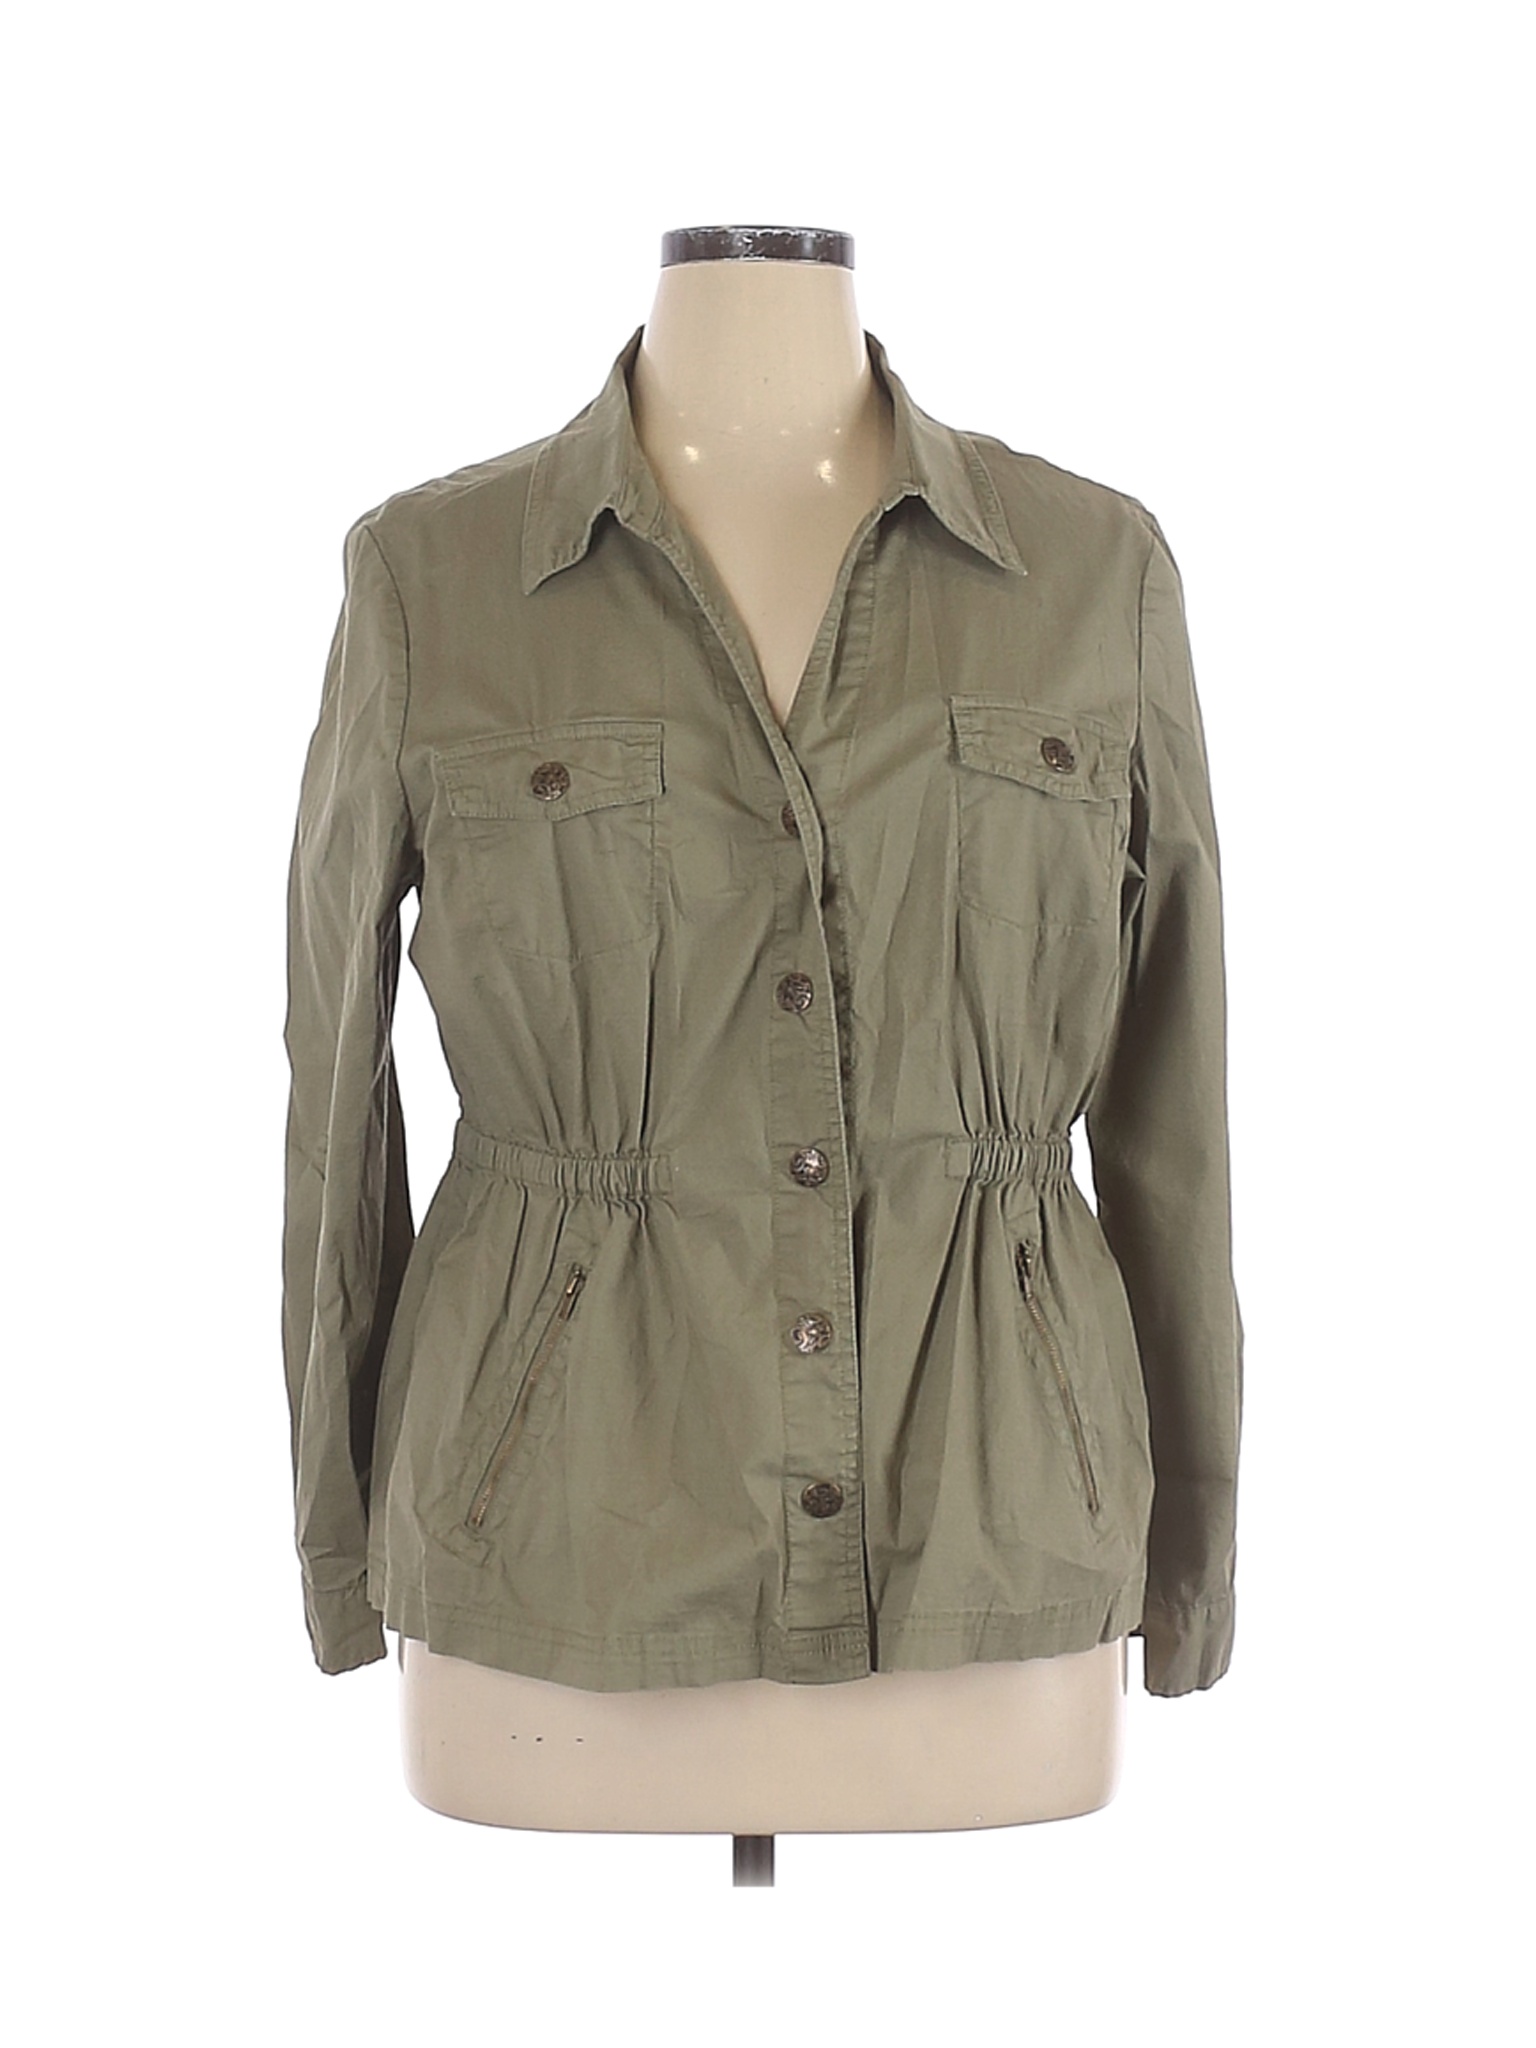 DressBarn Women Green Jacket XL | eBay